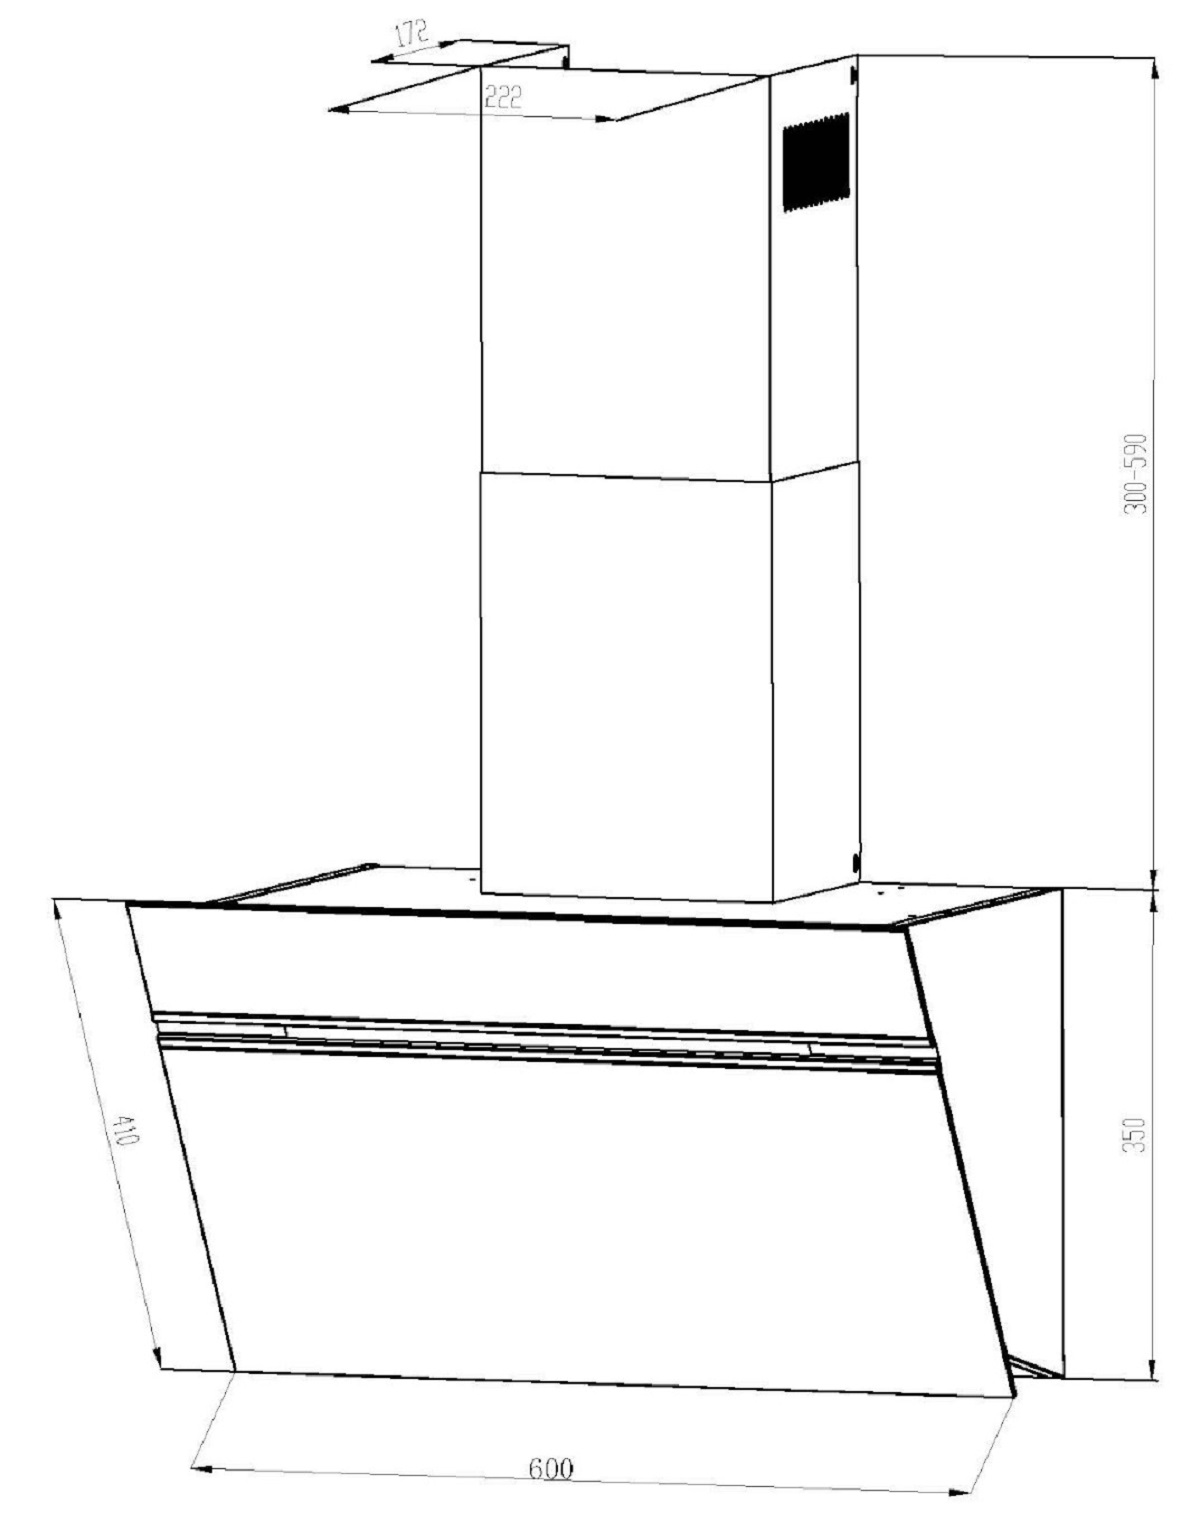 ABTZ, mm breit, tief) Dunstabzugshaube PKM mm 386 (600 S9-60